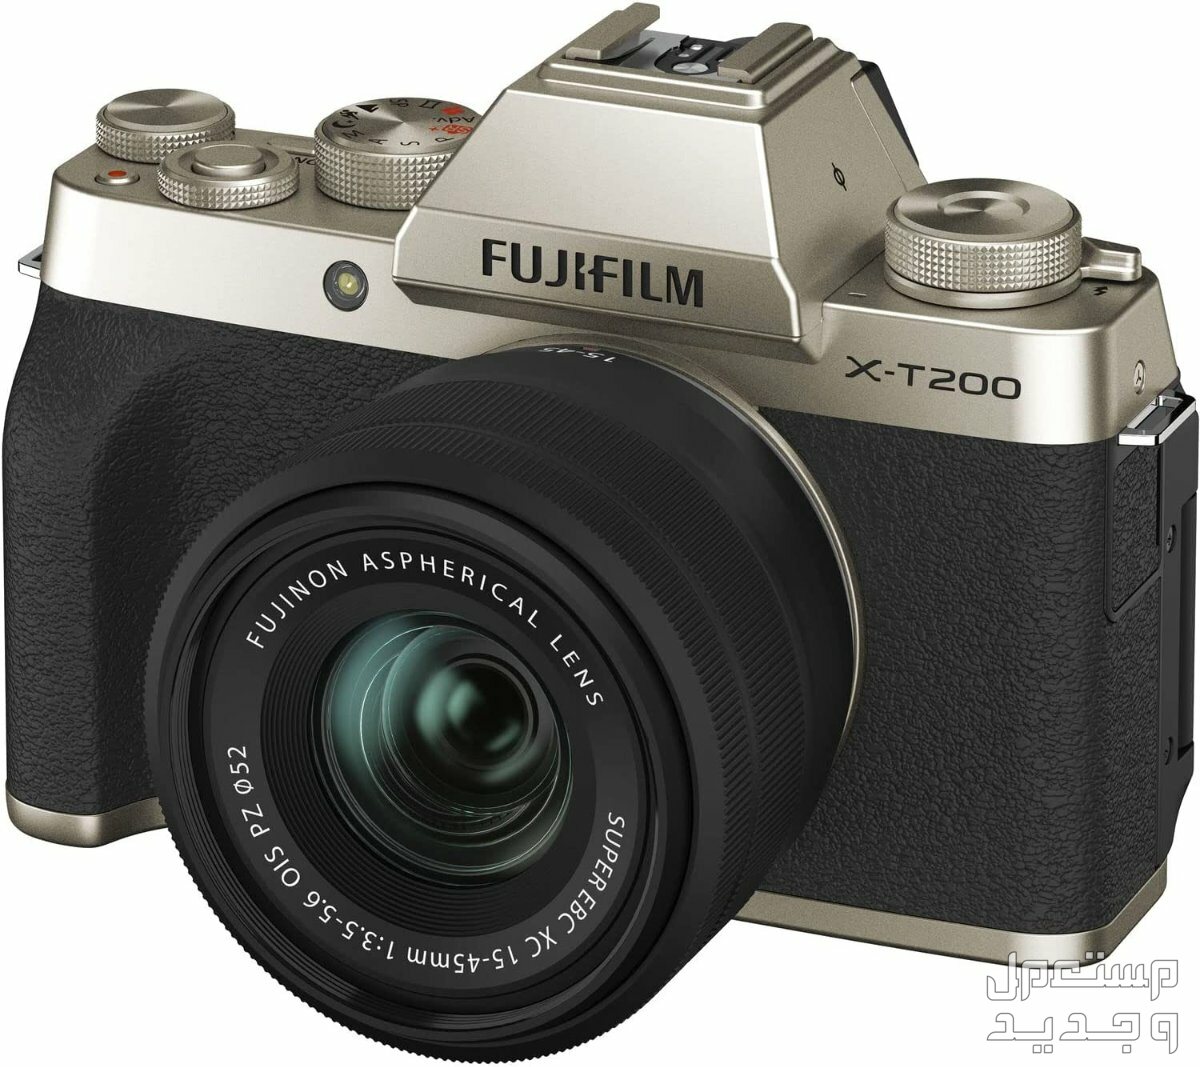 10 كاميرات تصوير ماركات عالمية بأسعار رخيصة في المغرب كاميرا Fujifilm X-T200